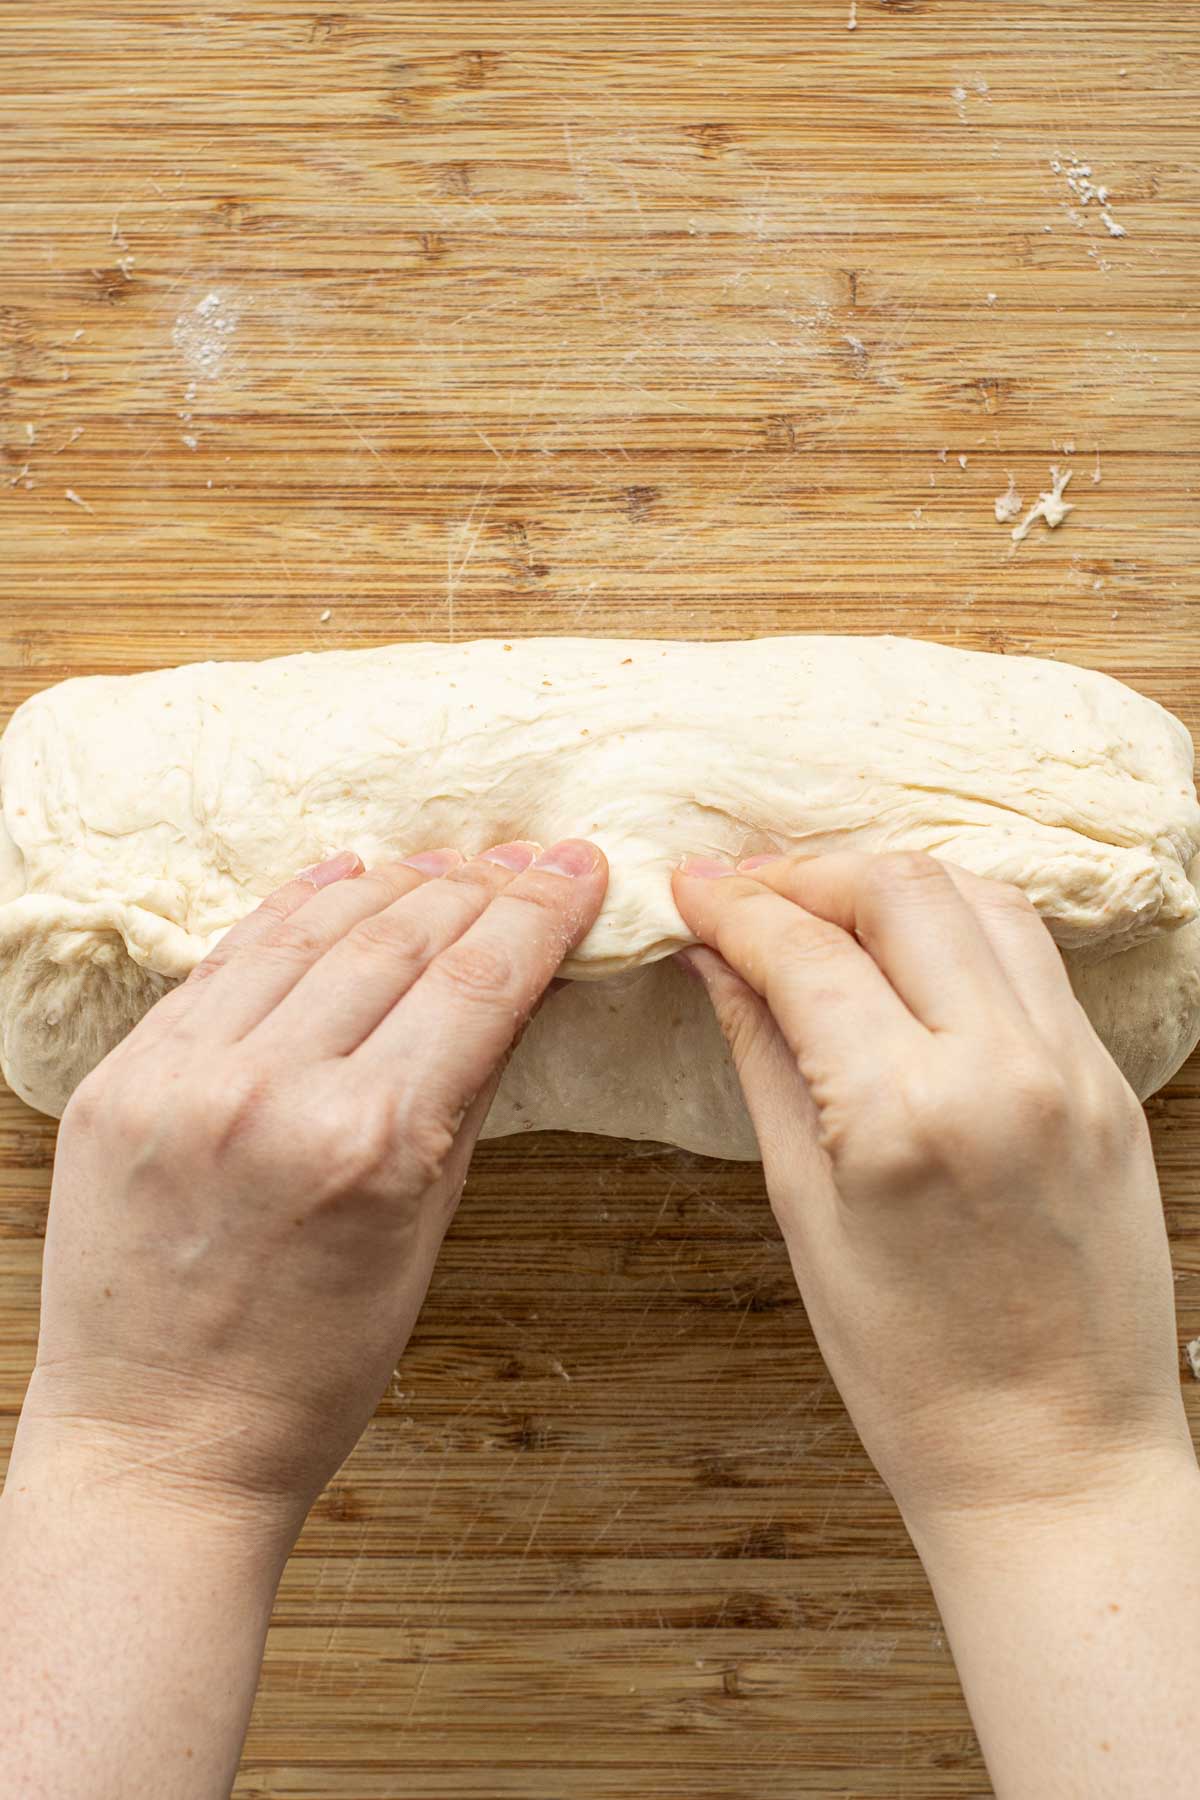 Hands pinching dough to close it.